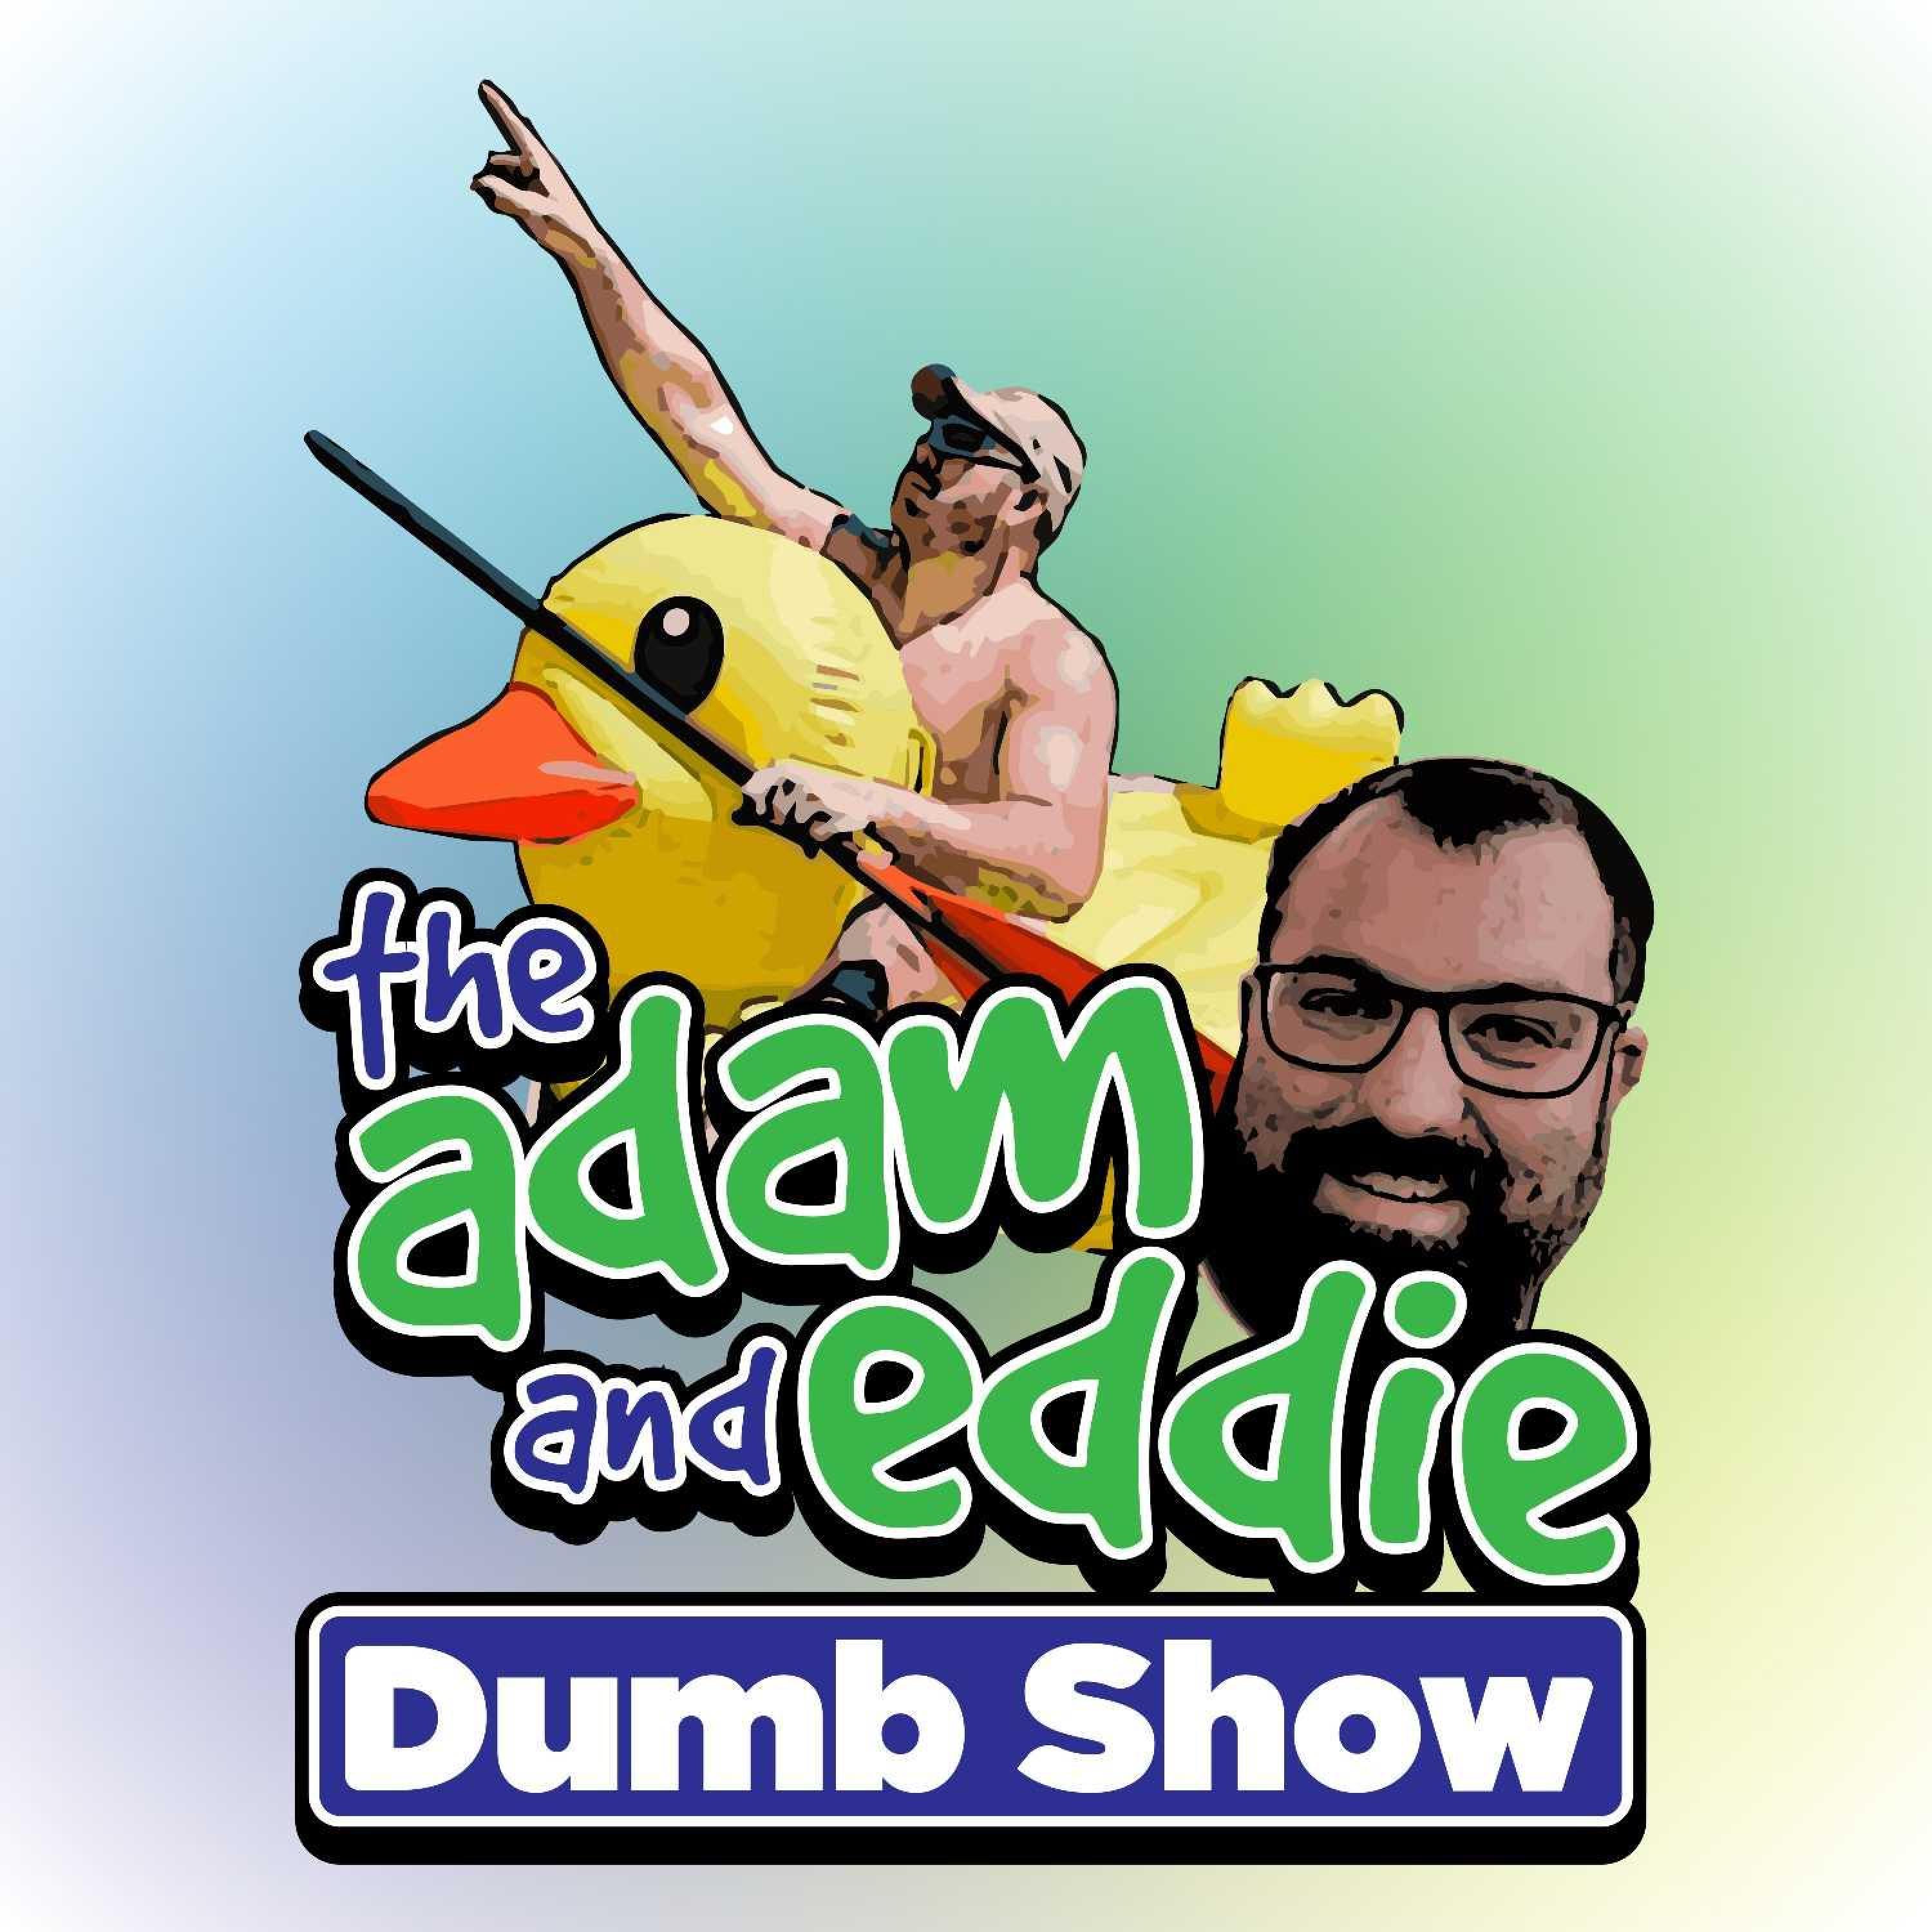 Adam and Eddie Dumb Show